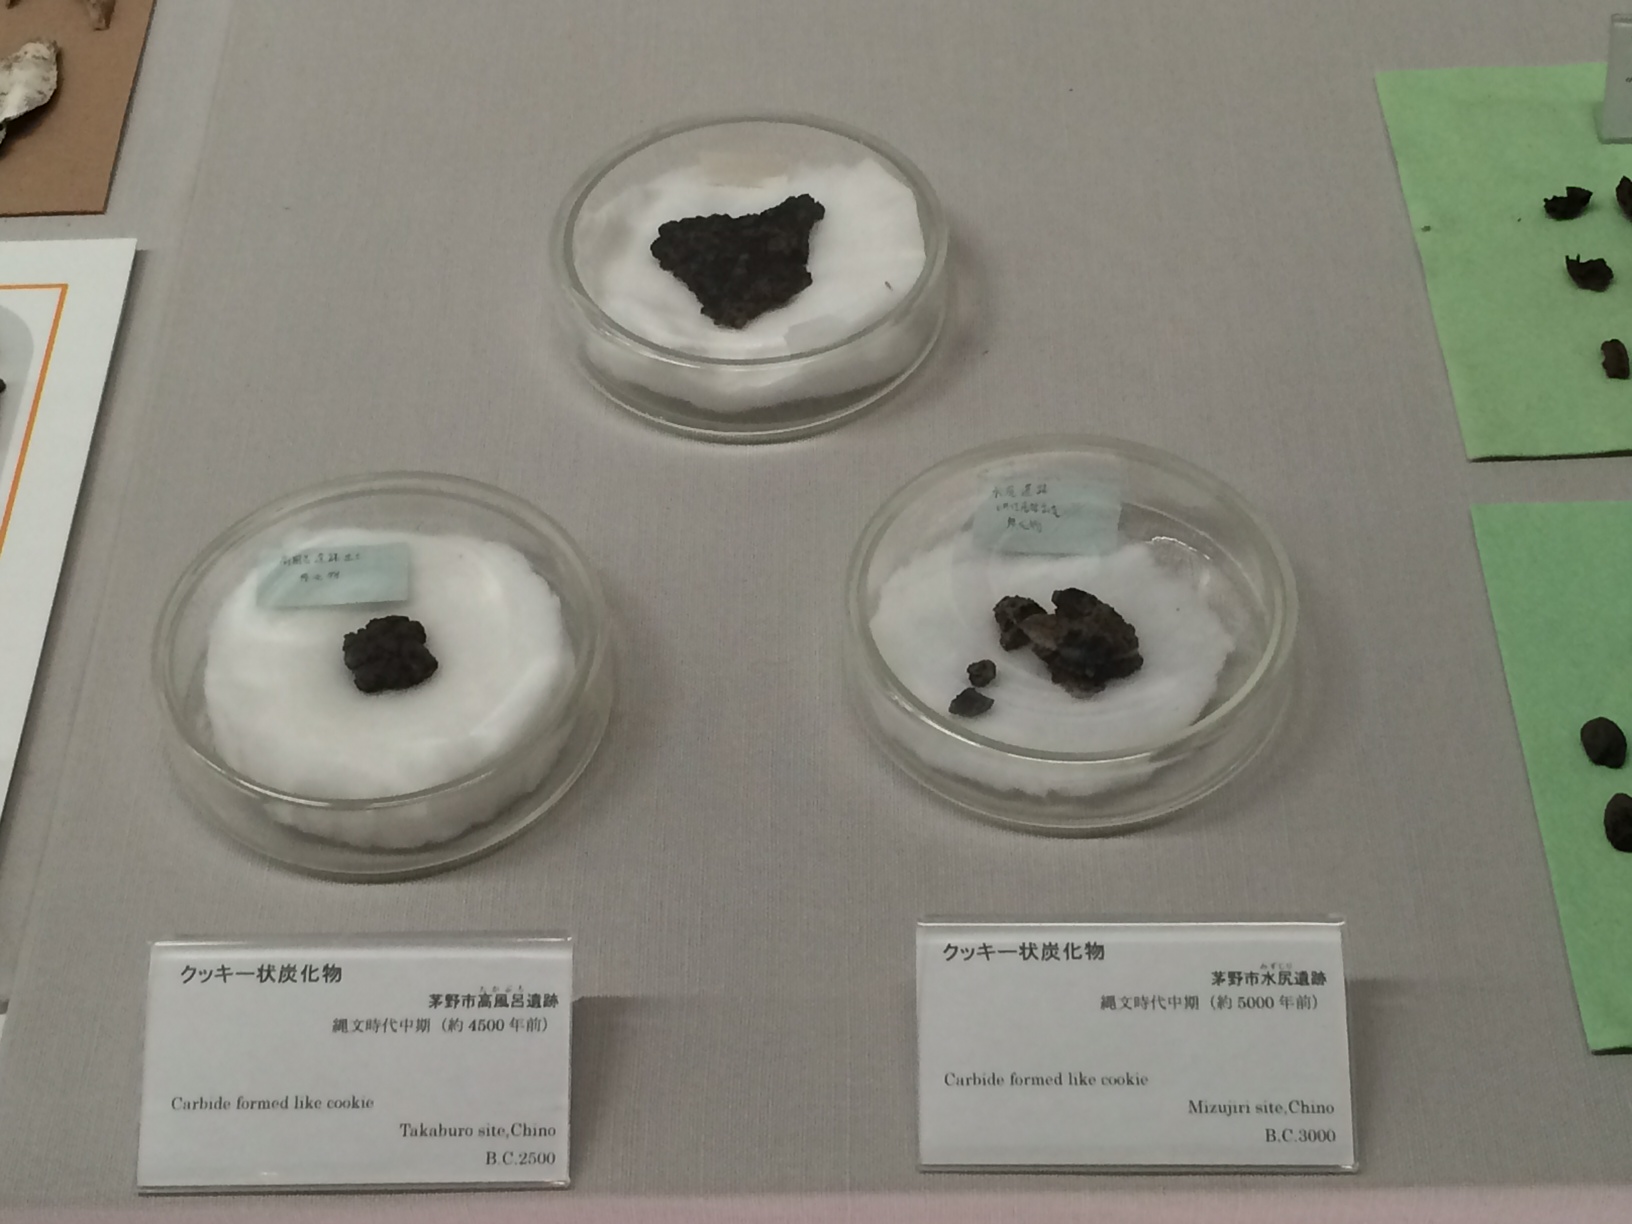 縄文時代の加工食品「クッキー状炭化物」の写真